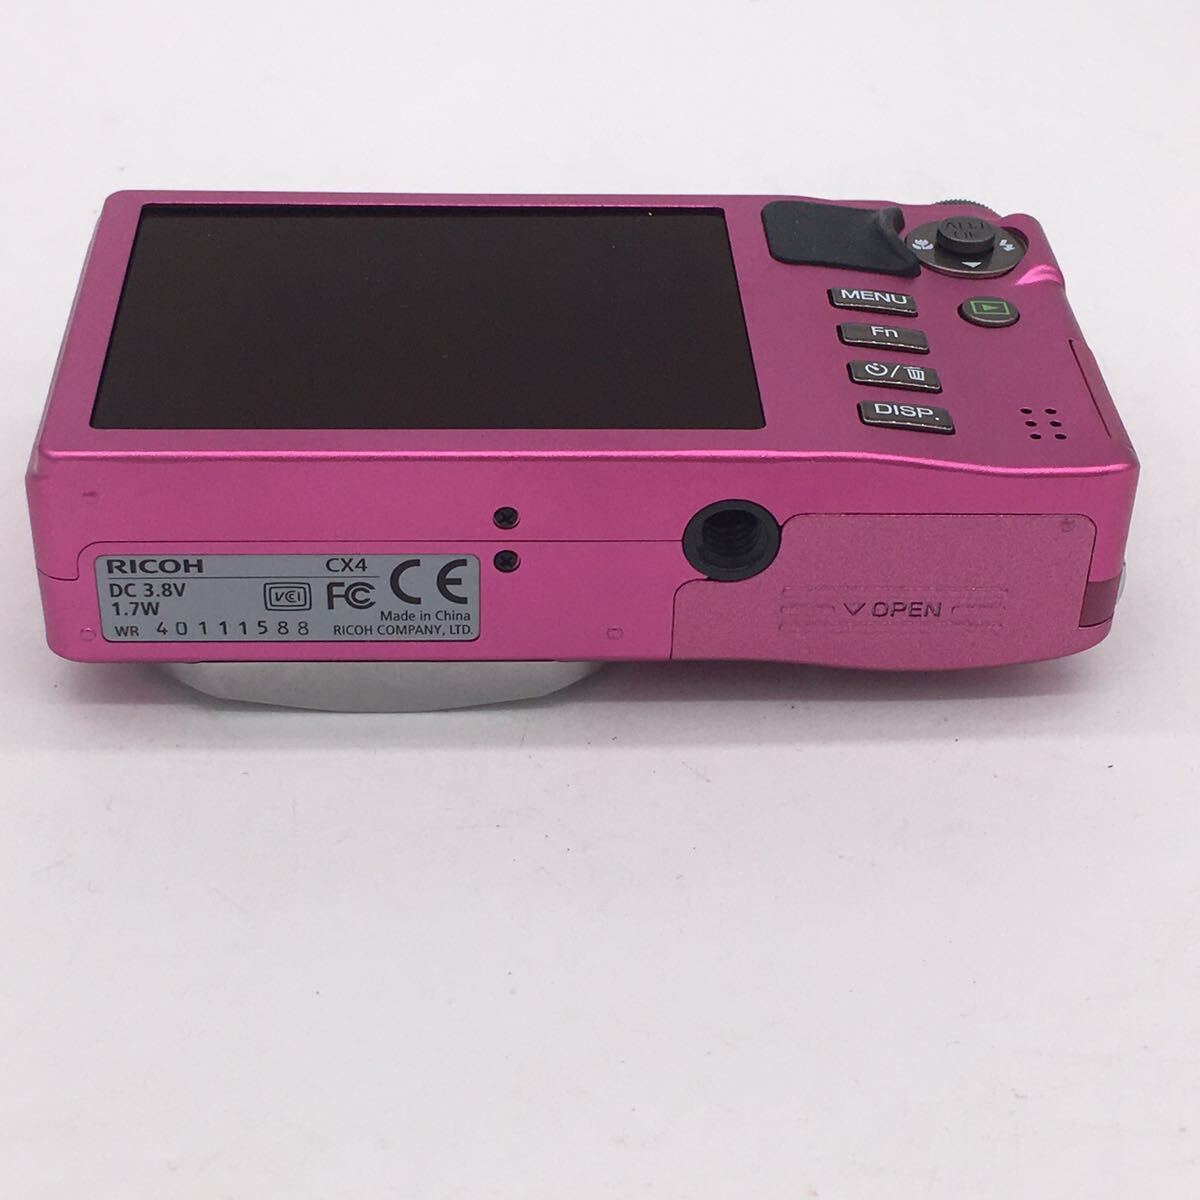 RICHO リコー CX4 バッテリー付き パープルピンク デジカメ デジタルカメラ バッテリー付属 動作未確認_画像6